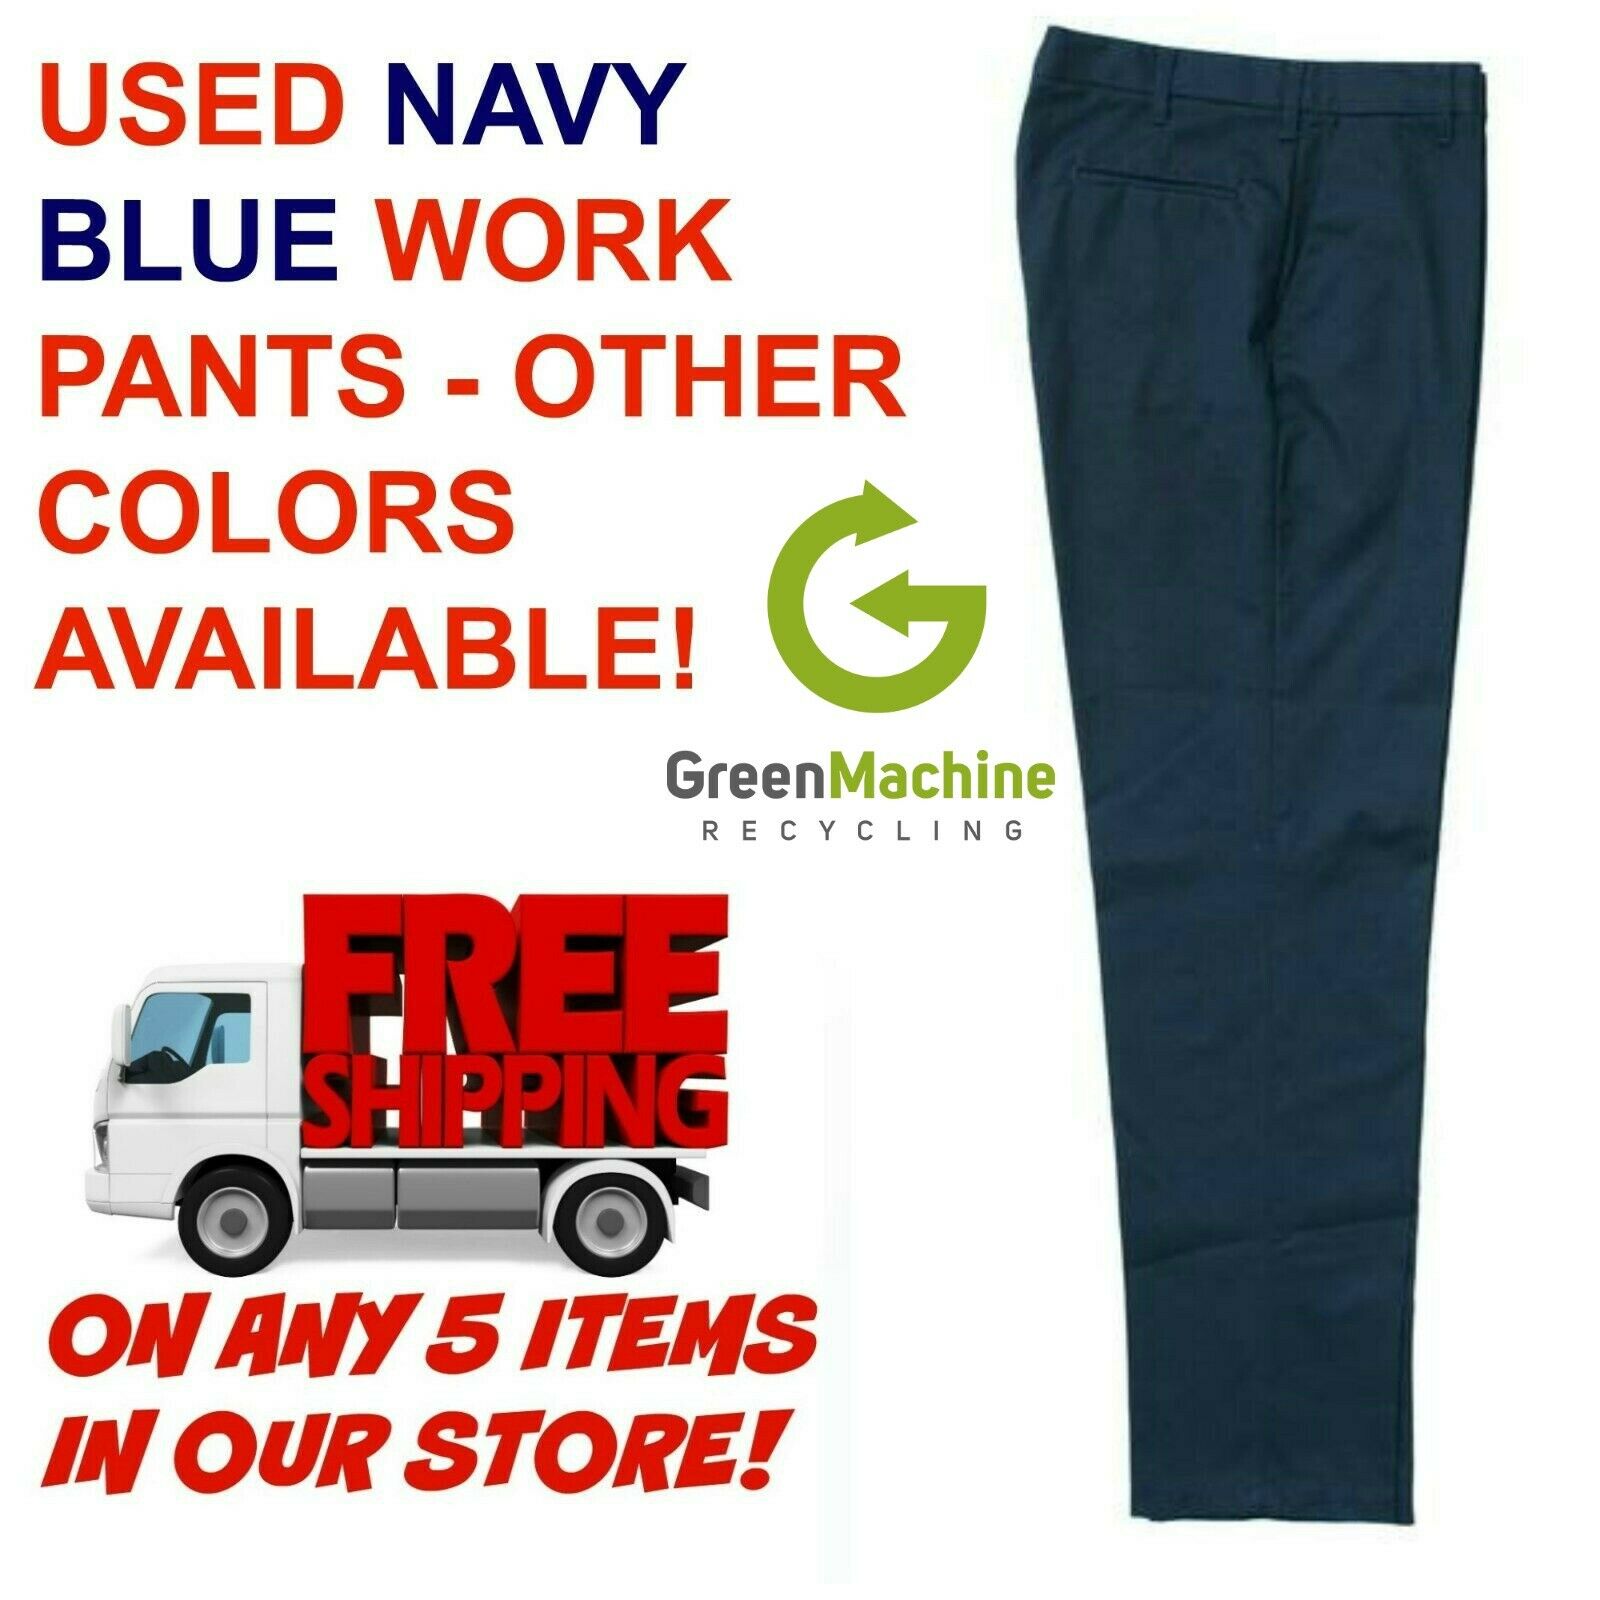 Used Uniform Work Pants Cintas Redkap Unifirst G&k Dickies Etc.